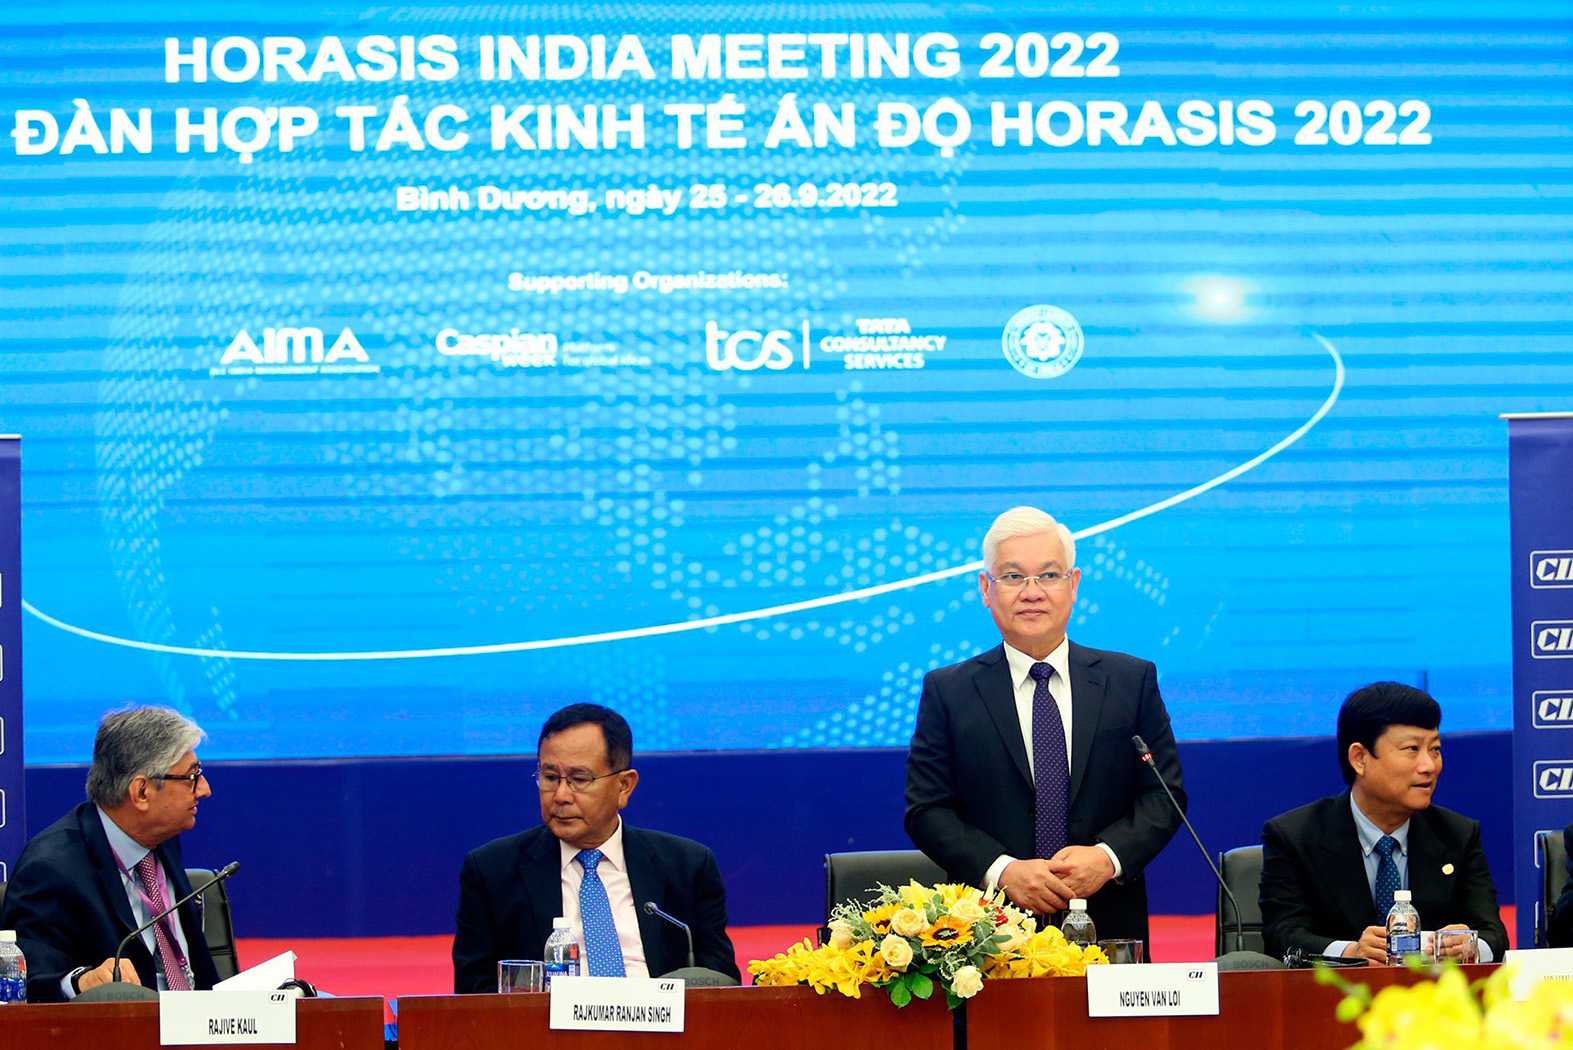 Ông Rajkumar Ranjan Singh - Quốc vụ khanh Bộ Ngoại giao Ấn Độ tại Diễn đàn hợp tác kinh tế Horasis Ấn Độ 2022.